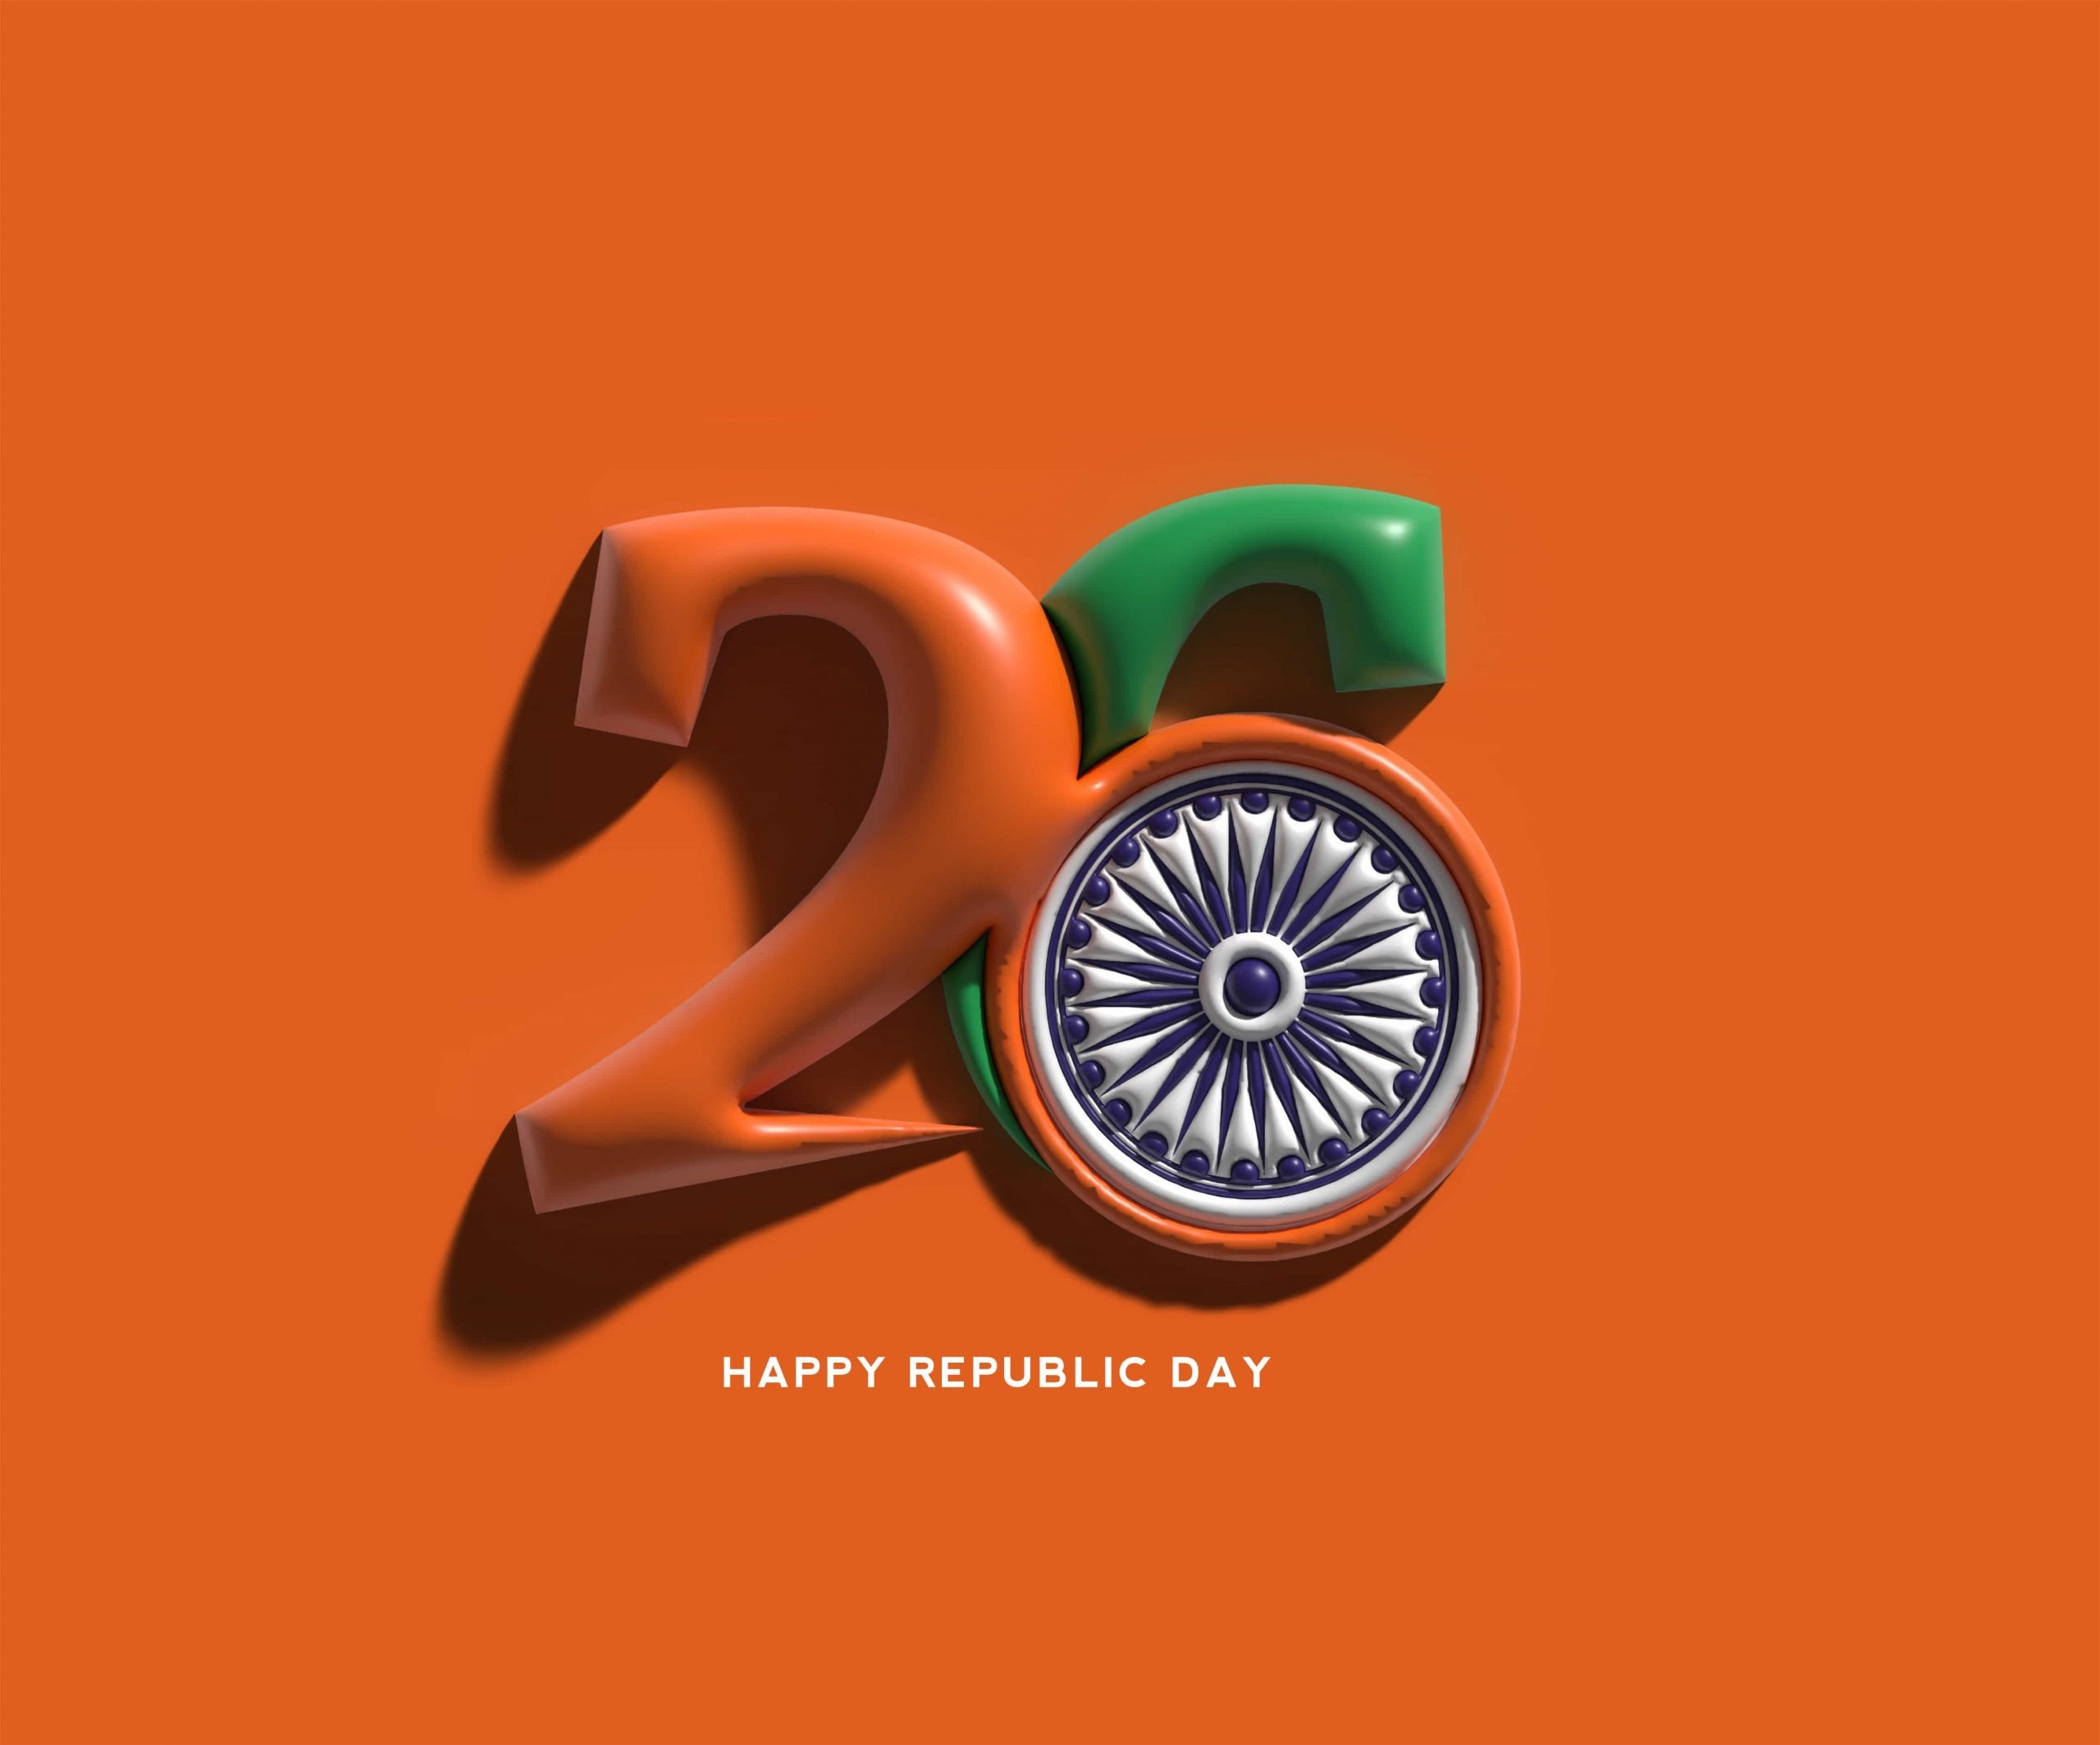 Republic Day Wallpapers: Ngày lễ Quốc khánh là ngày lễ quan trọng nhất của Ấn Độ, và để tôn vinh ngày lễ này, người dân Ấn Độ thường trang trí các bức ảnh và hình nền độc đáo. Nếu bạn muốn khám phá các hình nền dành cho Ngày lễ Quốc khánh, hãy truy cập ảnh liên quan đến Republic Day Wallpapers - những hình nền độc đáo, sang trọng và tuyệt đẹp.